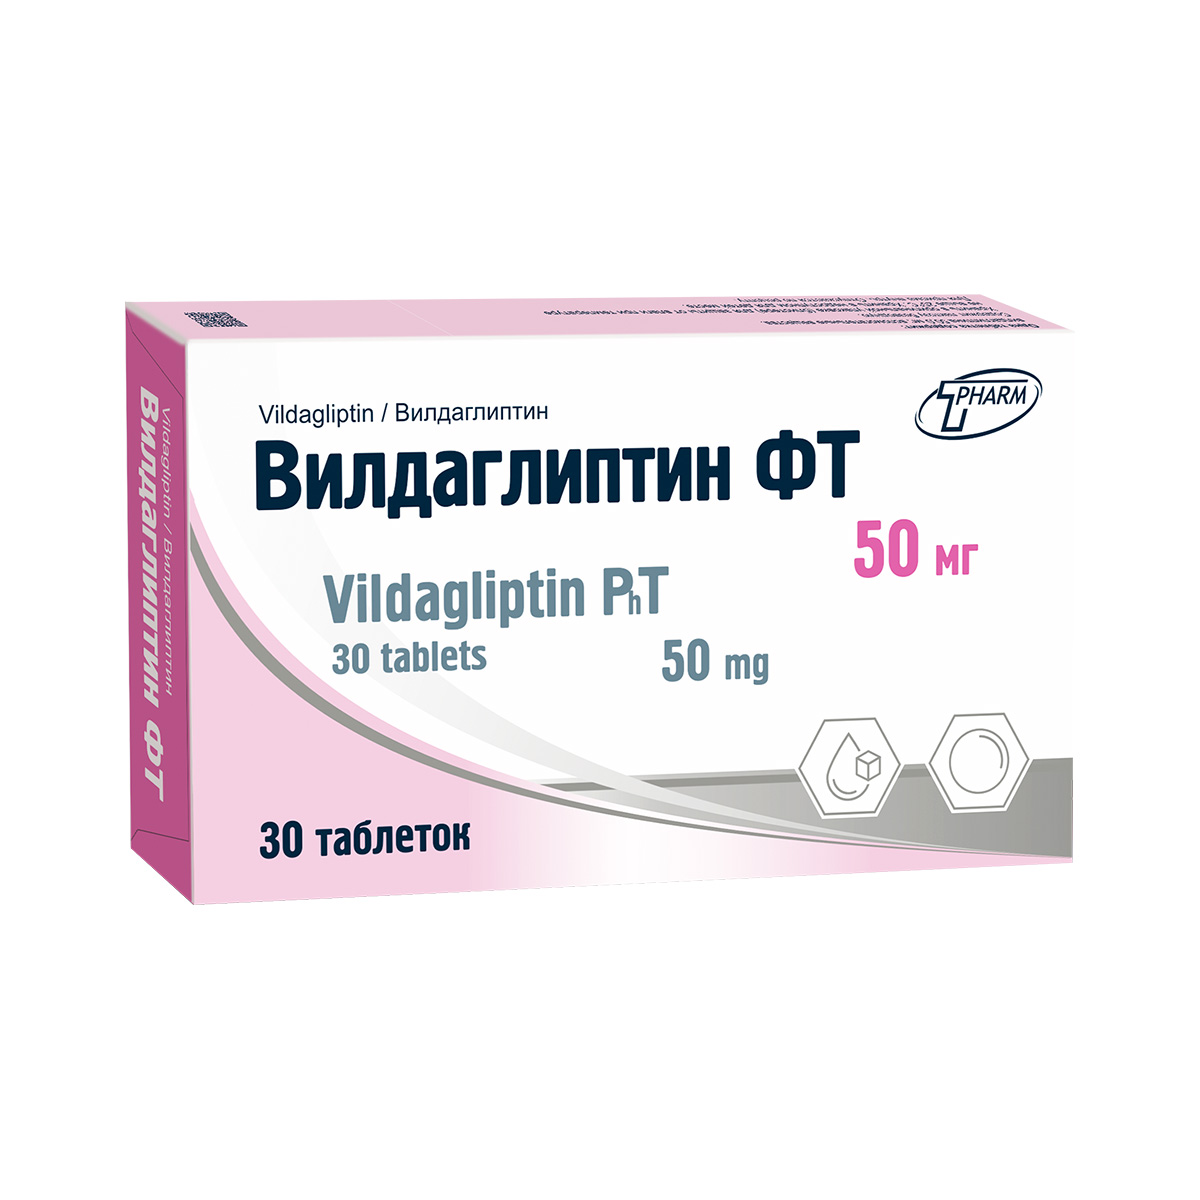 Вилдаглиптин ФТ 50 мг таблетки 30 шт